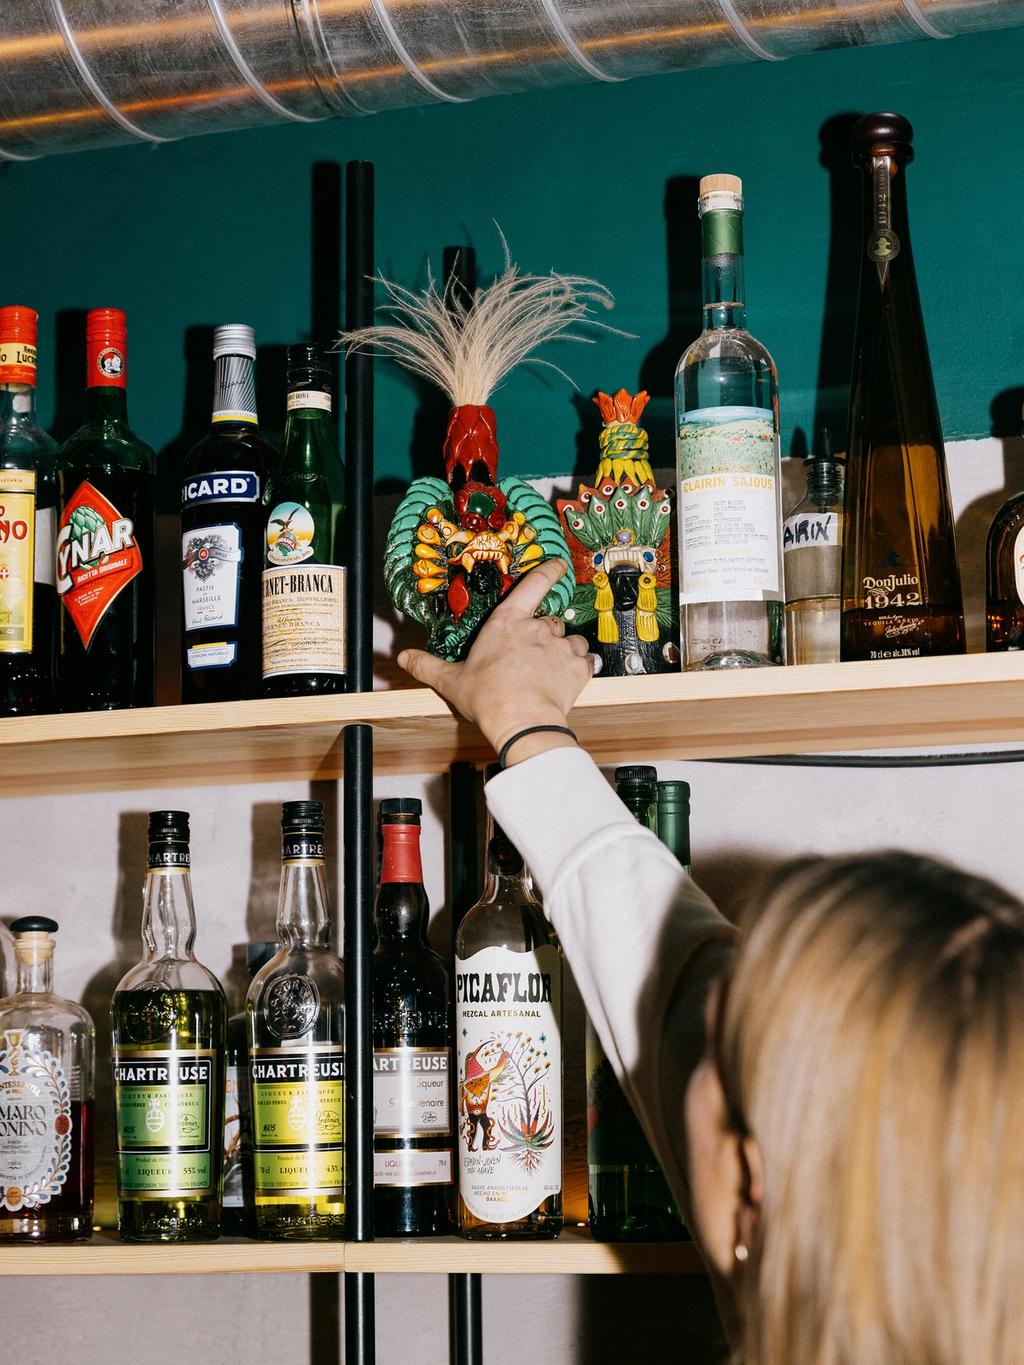 Hylla bak baren er eklektisk pyntet – blant annet med obskure meksikanske spritflasker.